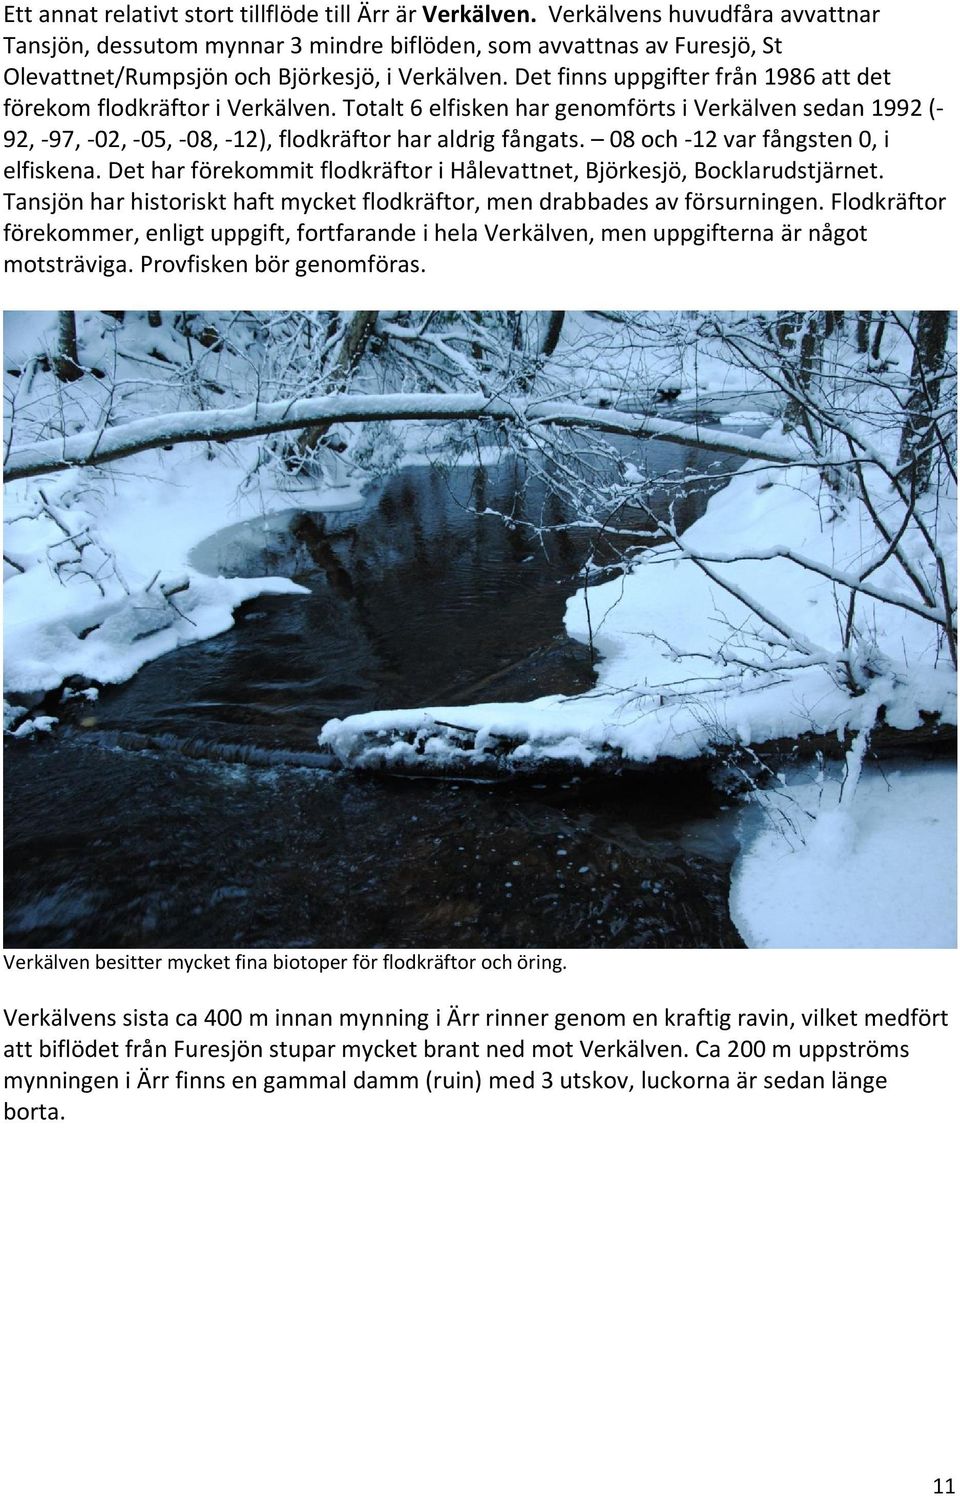 Det finns uppgifter från 1986 att det förekom flodkräftor i Verkälven. Totalt 6 elfisken har genomförts i Verkälven sedan 1992 (- 92, -97, -02, -05, -08, -12), flodkräftor har aldrig fångats.